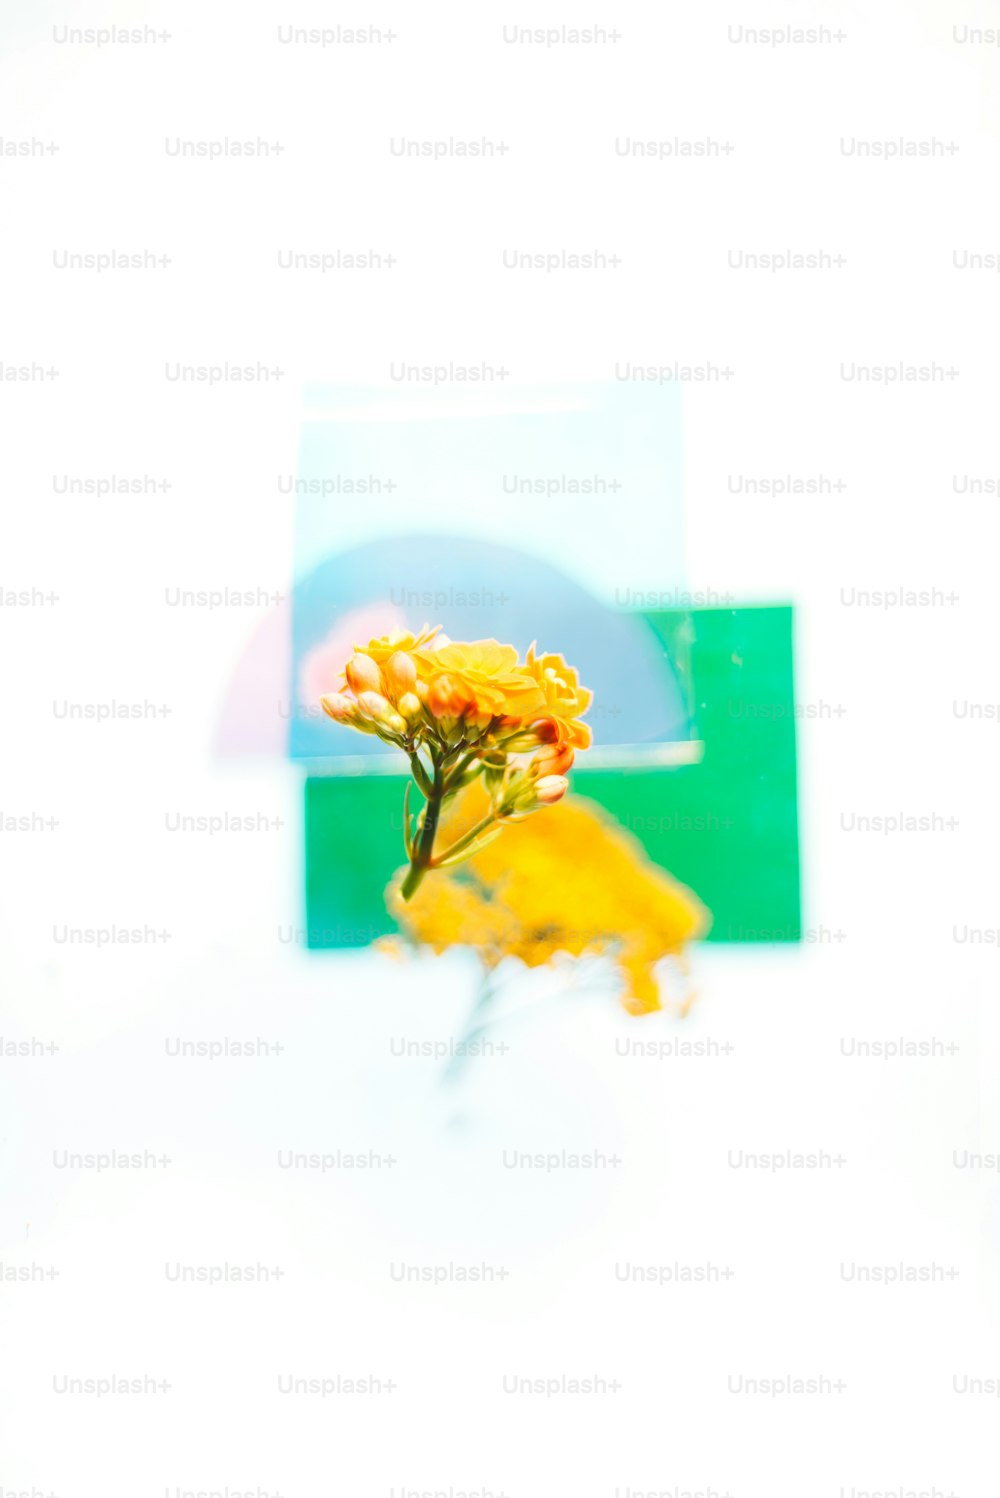 Una imagen de una flor amarilla frente a un fondo blanco